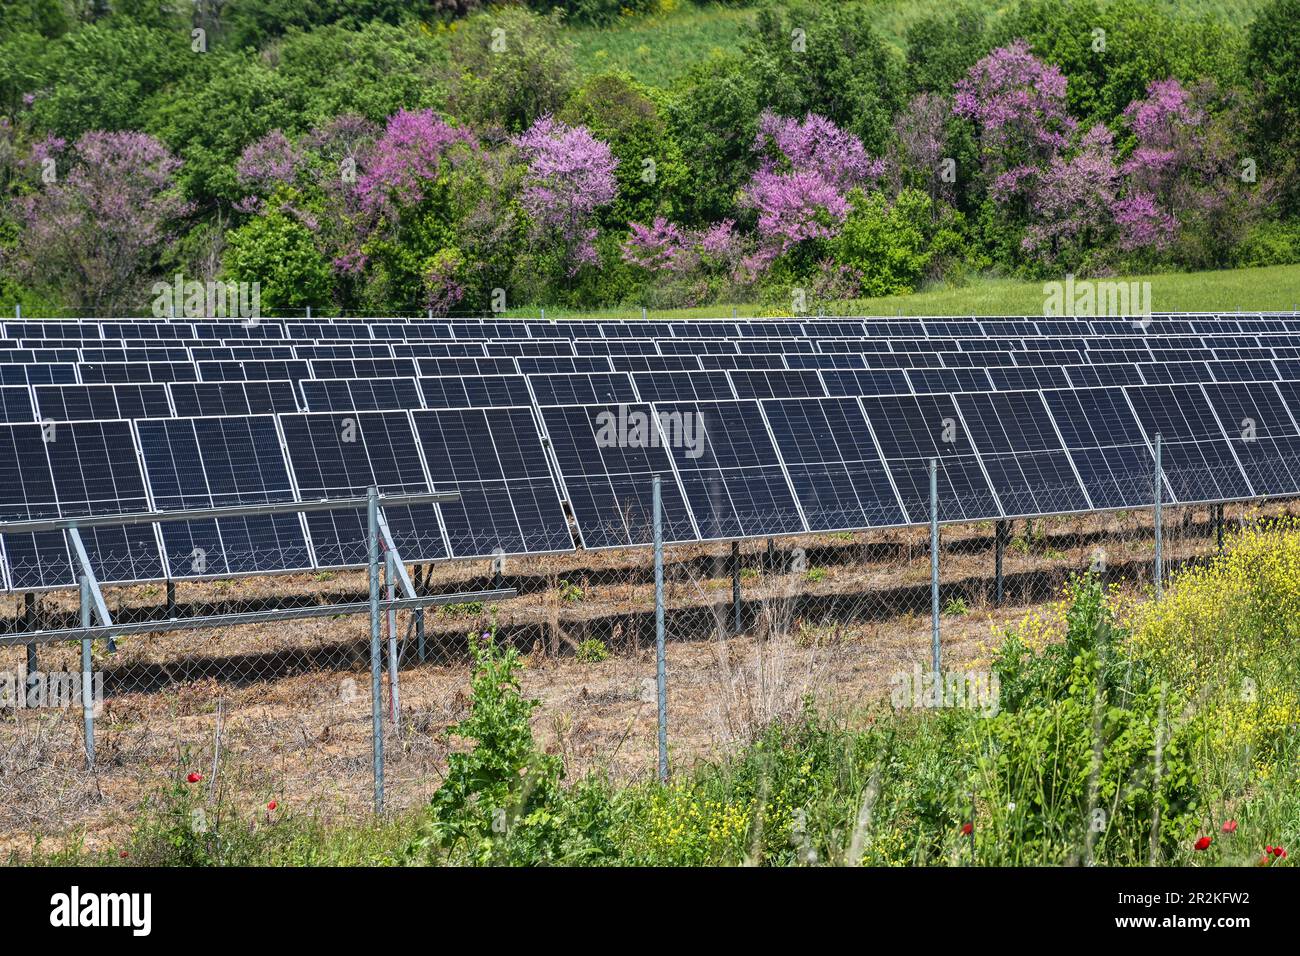 Pannelli solari su un campo di fronte a una siepe mista con cespugli fioriti, energia rinnovabile rispettosa dell'ambiente contro il riscaldamento climatico globale, sel Foto Stock